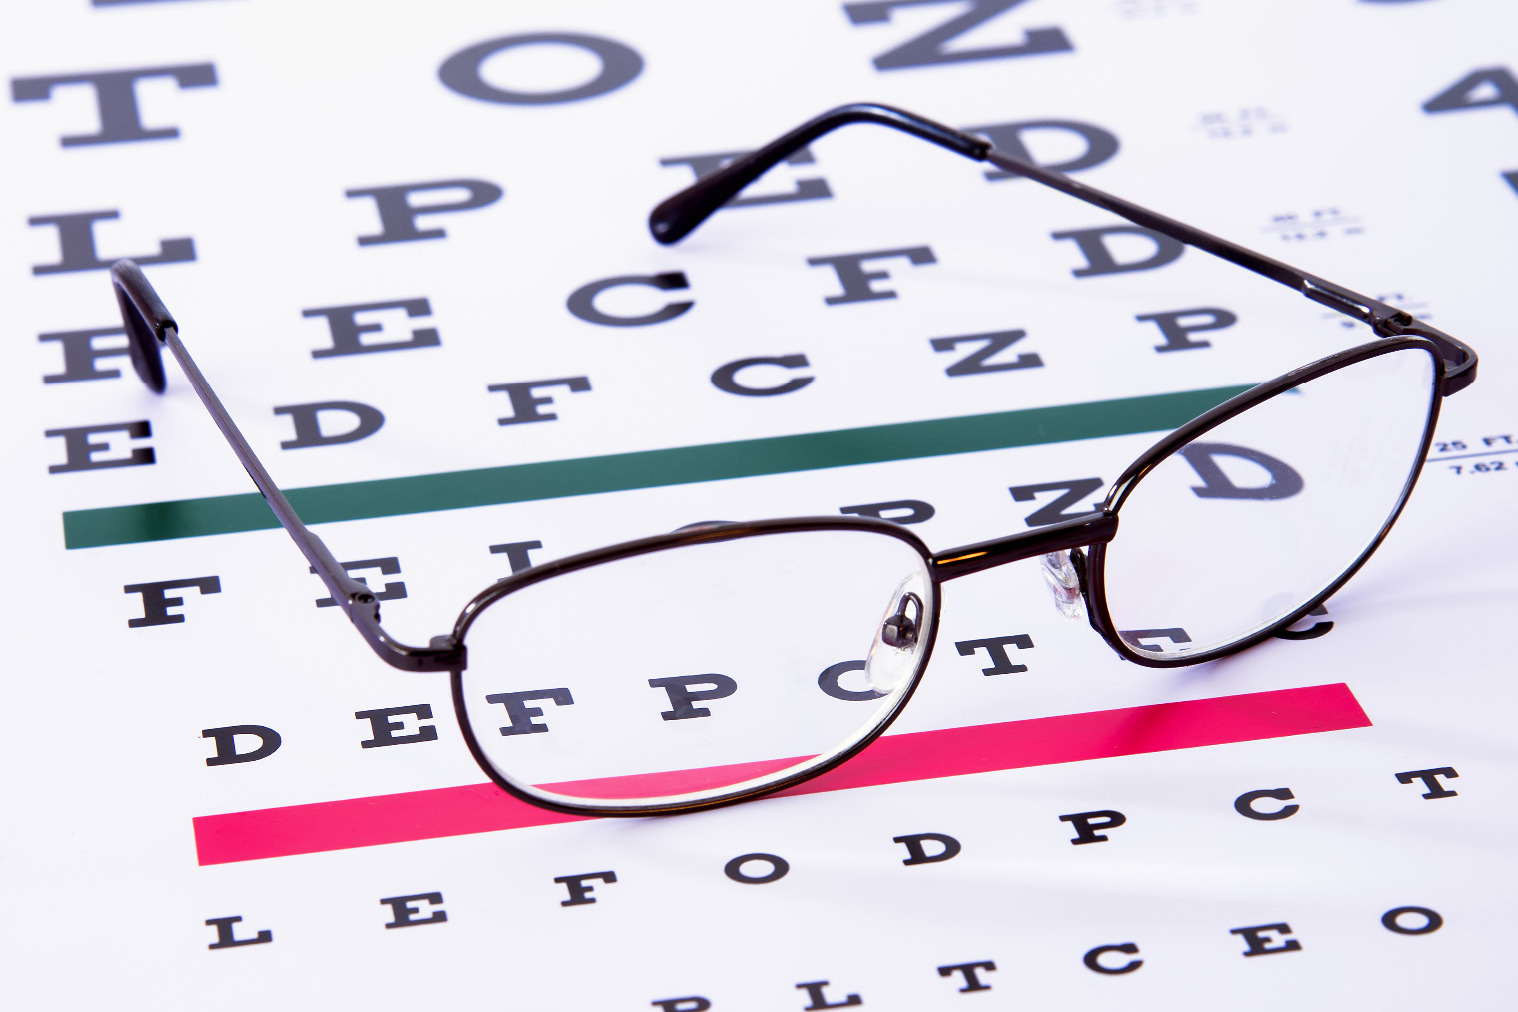 Eye sight test, eye examination, eye chart, glasses, designer frames